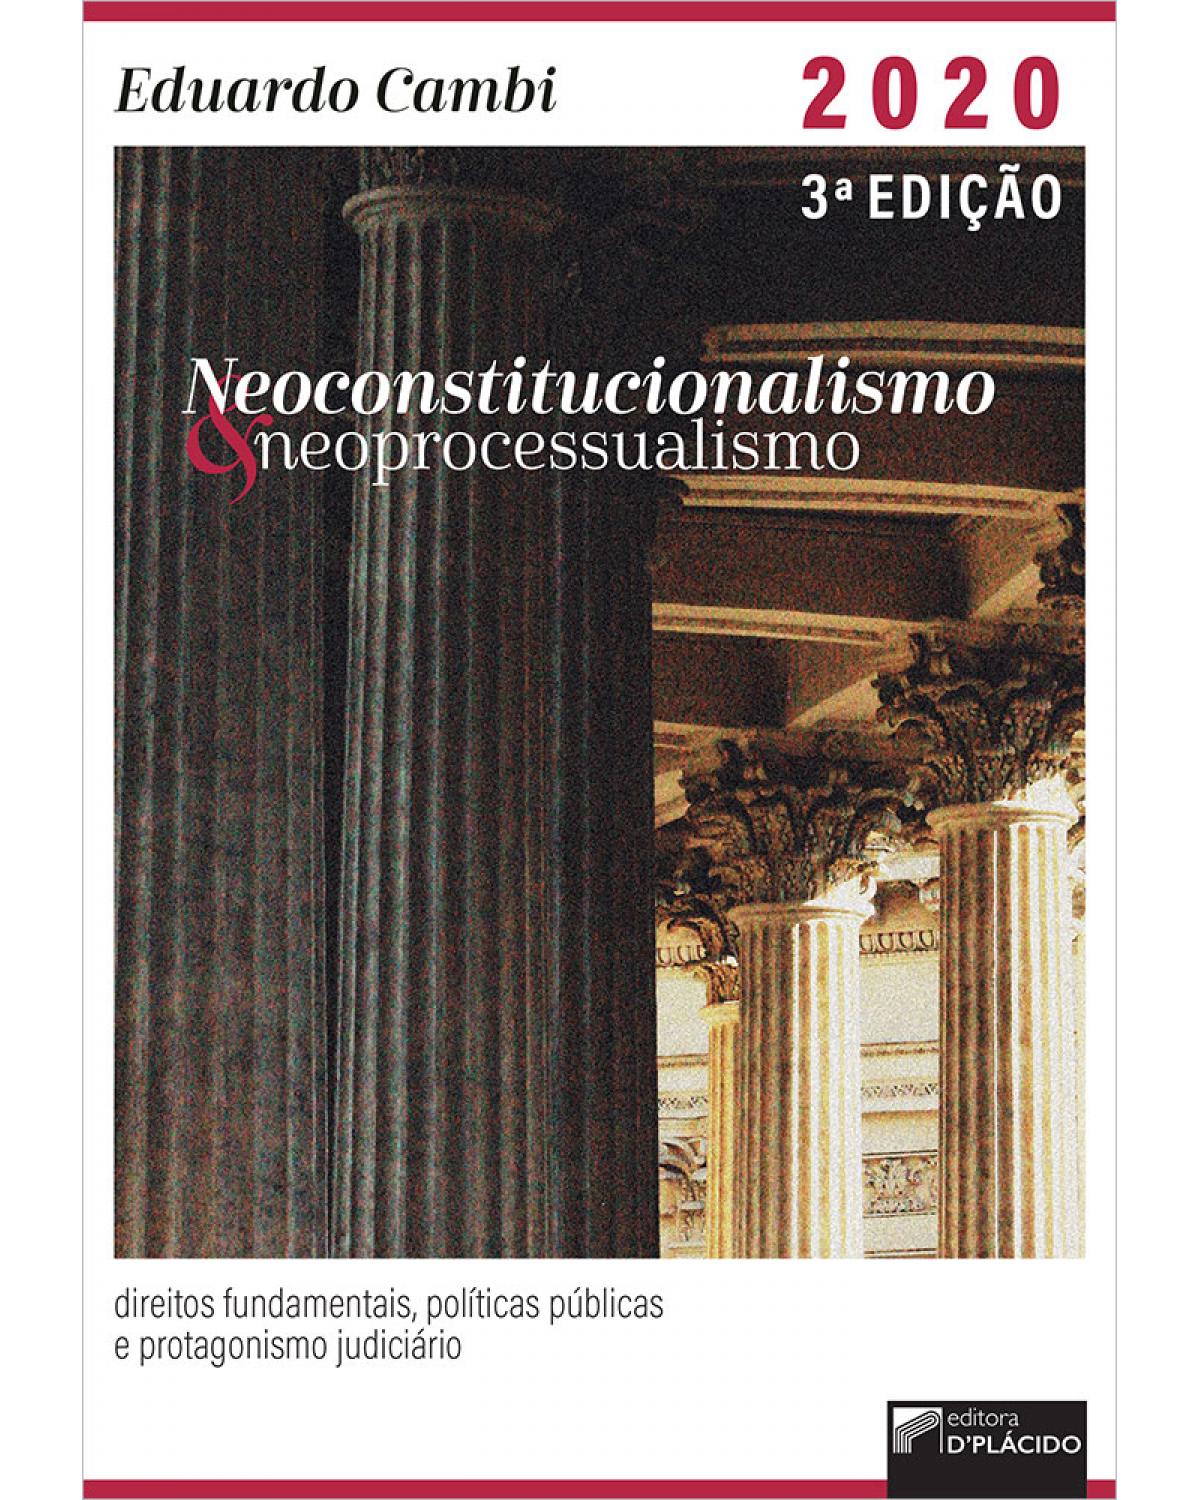 Neoconstitucionalismo e neoprocessualismo: direitos fundamentais, políticas públicas e protagonismo judiciário - 3ª Edição | 2020